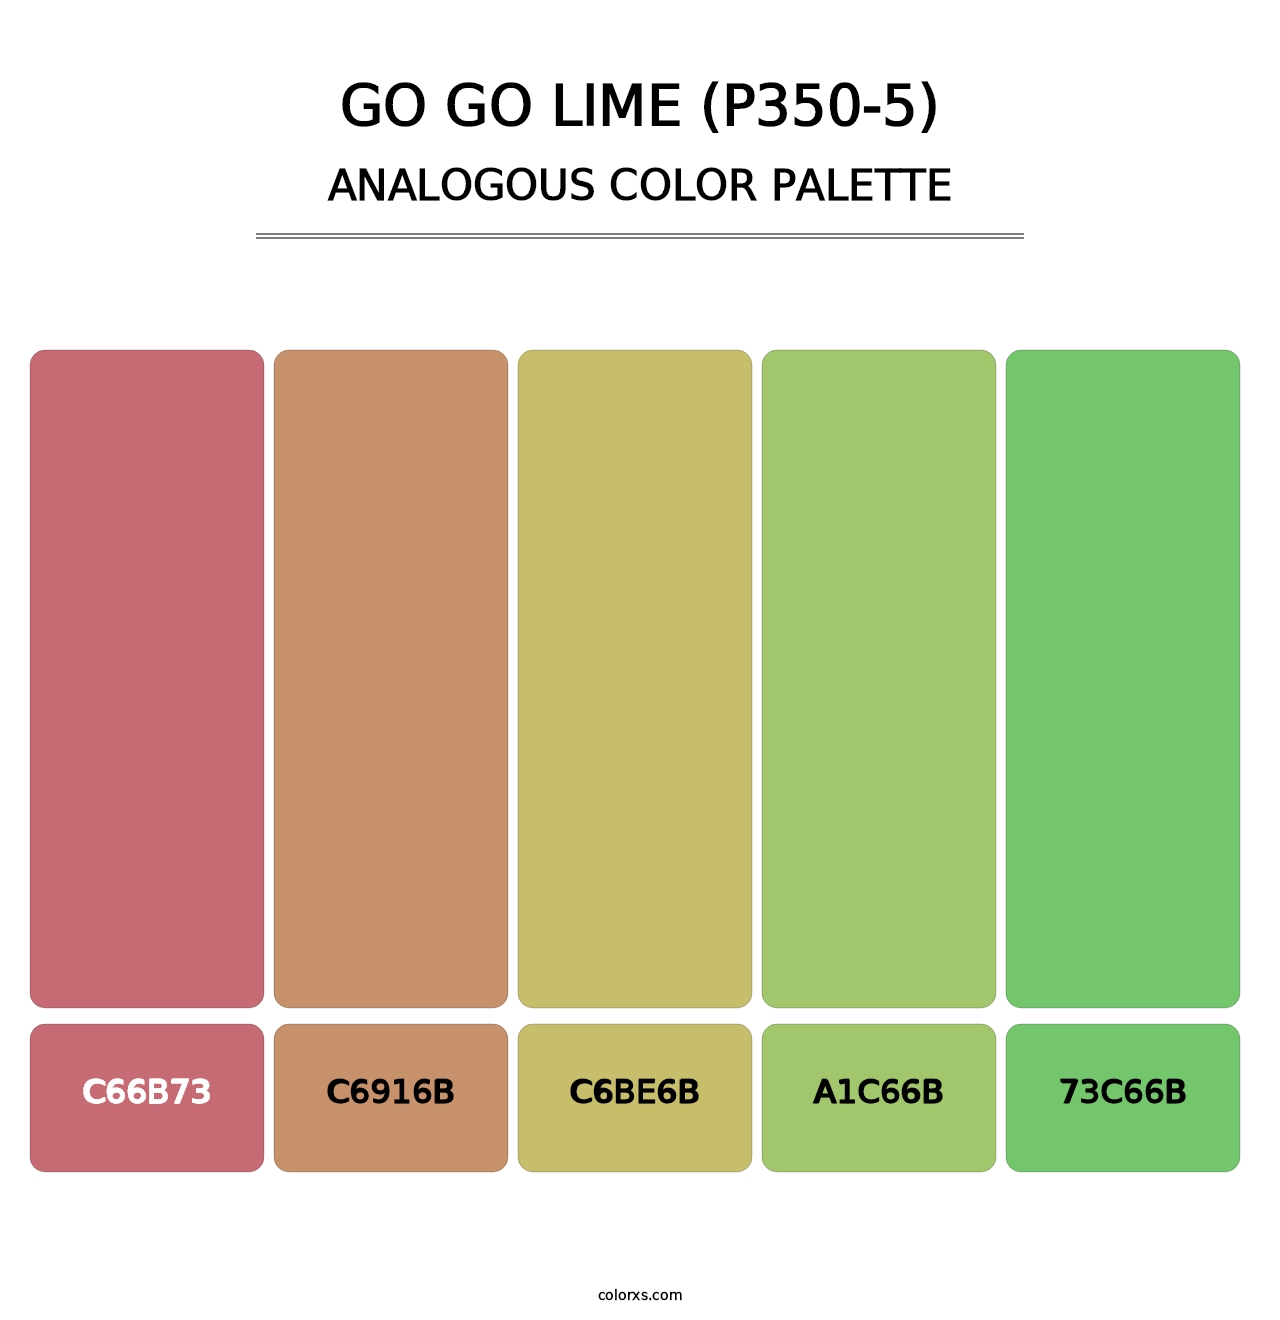 Go Go Lime (P350-5) - Analogous Color Palette